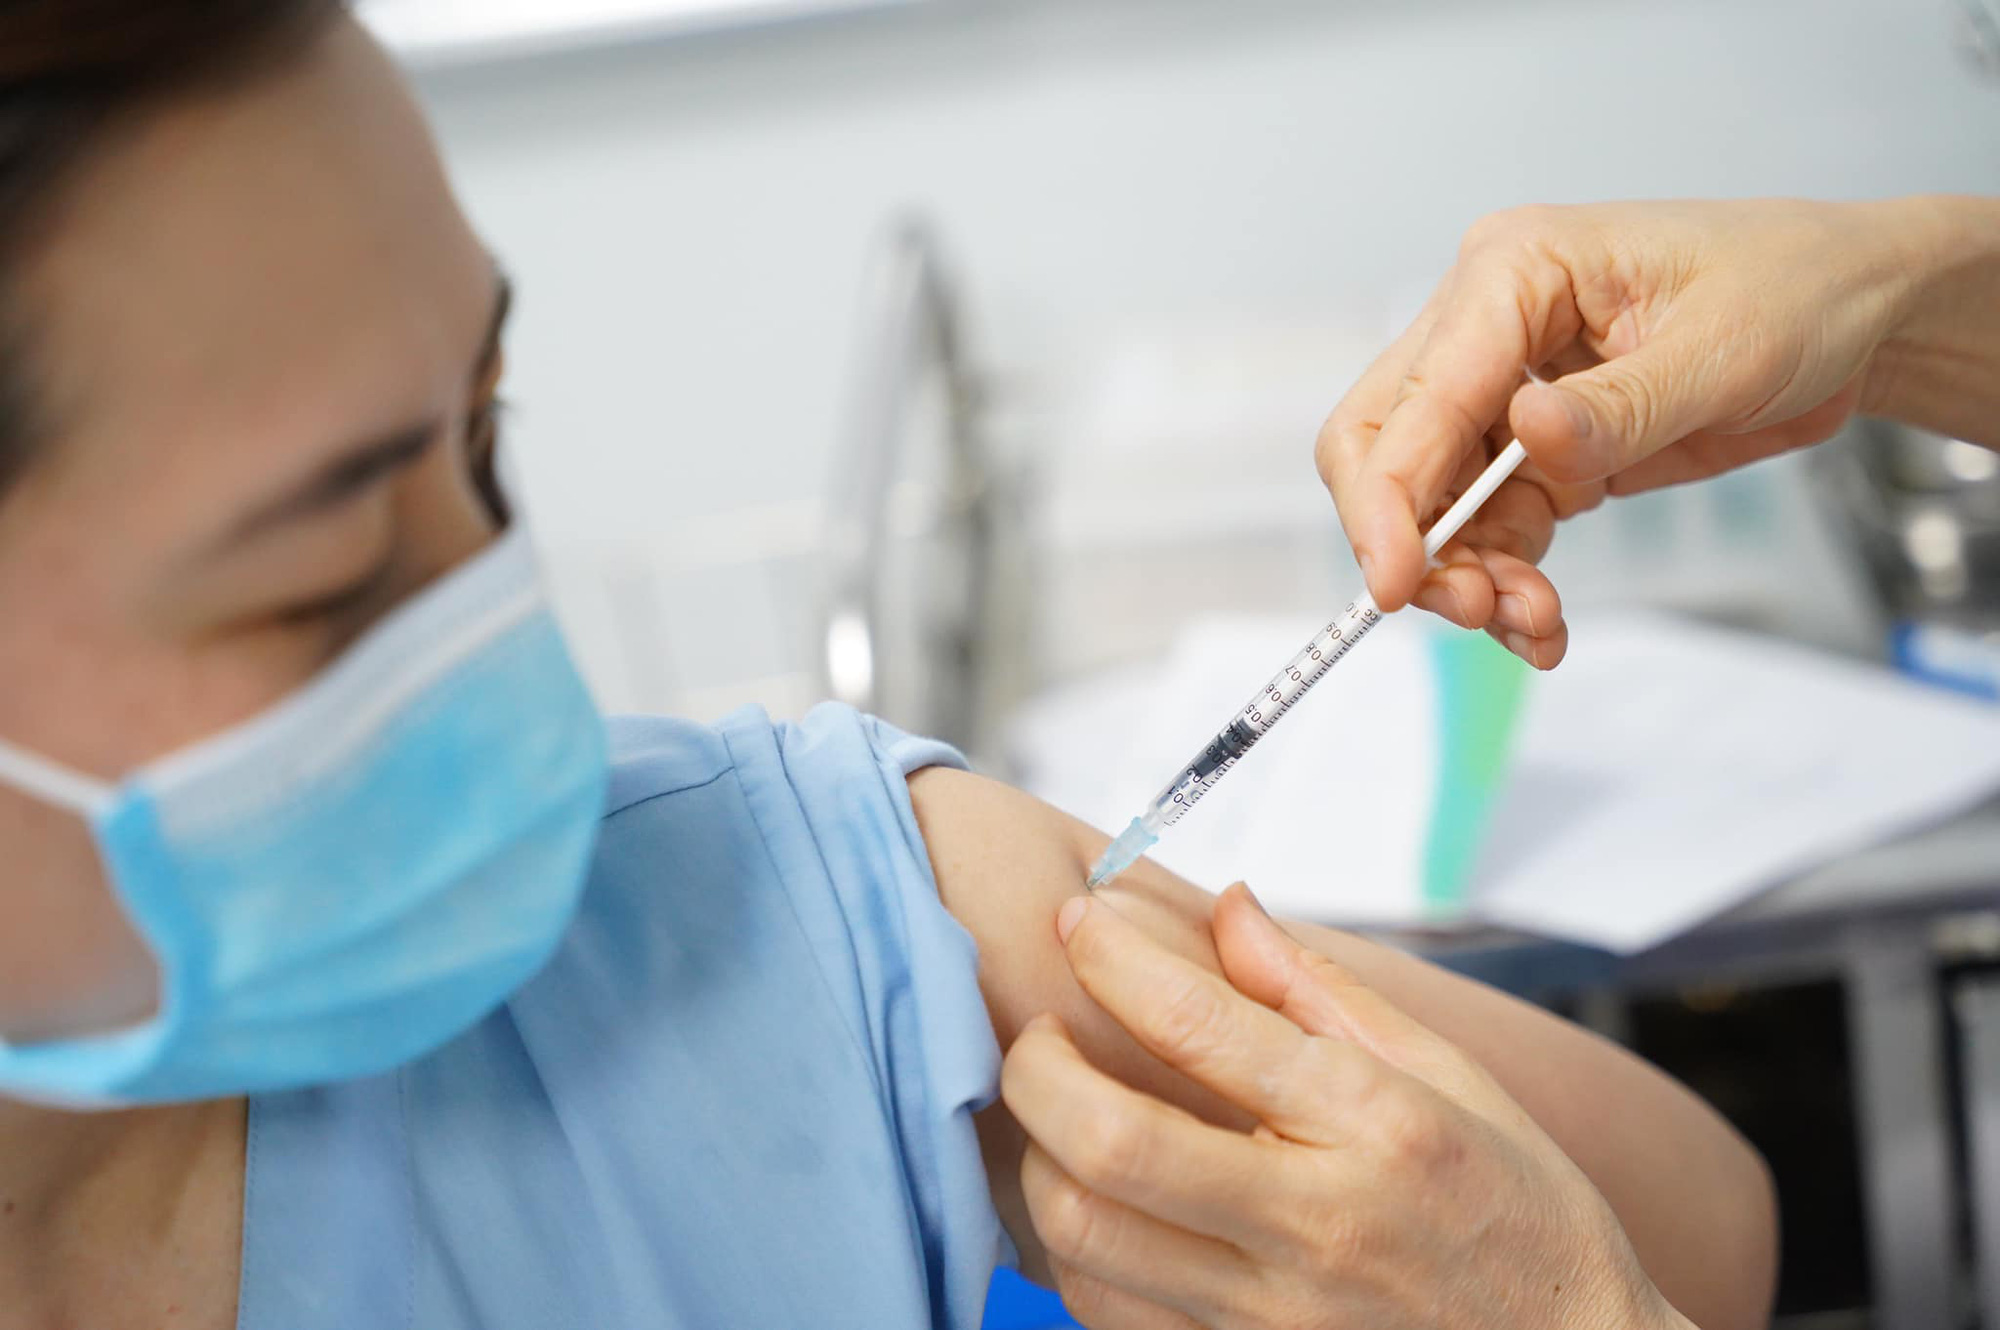 Khẩn: Bộ Y tế yêu cầu tổ chức tiêm chủng vắc xin COVID-19 an toàn, đảm bảo giãn cách - Ảnh 1.